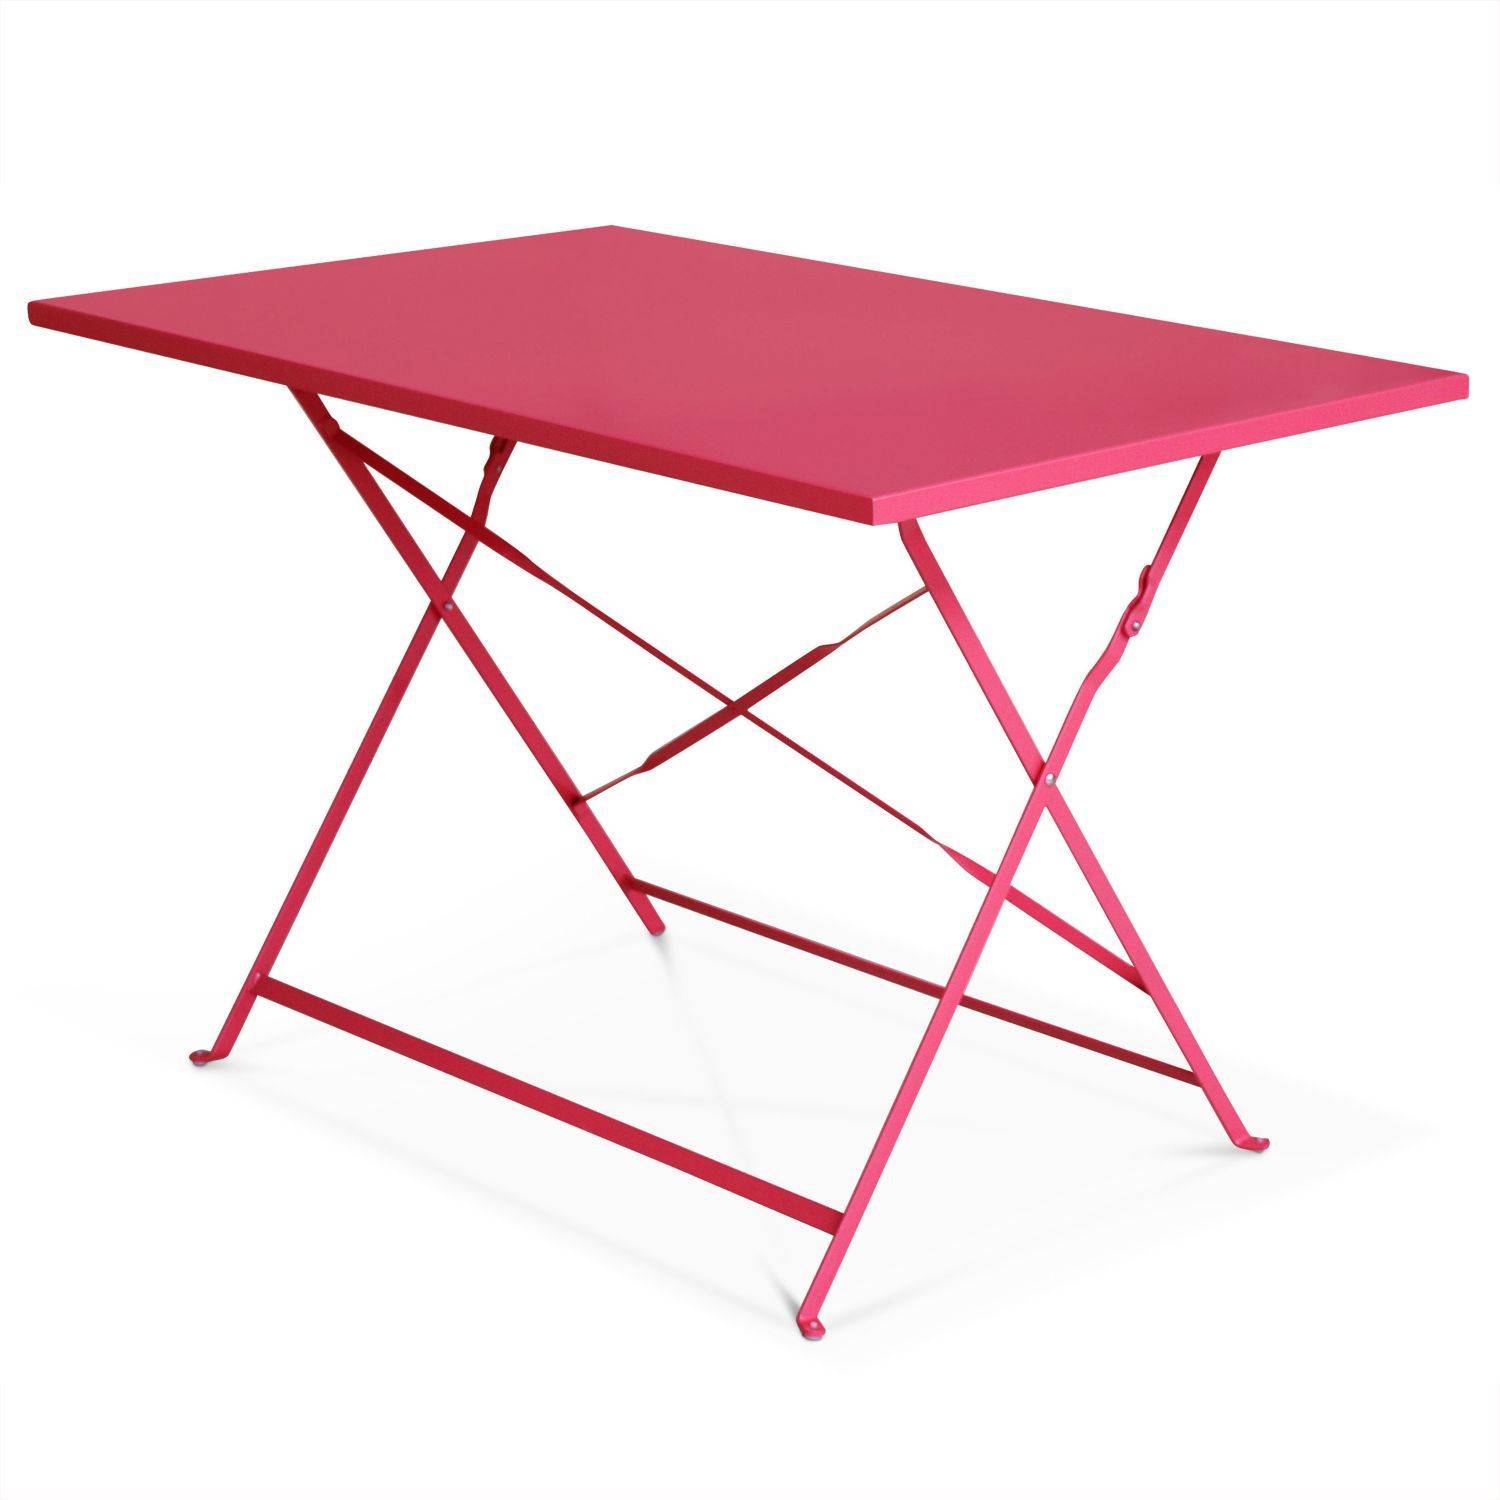 Tavolo da giardino, bar bistrot, pieghevole - modello: Emilia, rettangolare, colore: Rosso Lampone - Tavolo, dimensioni: 110x70cm, con quattro sedie pieghevoli, acciaio termolaccato Photo3